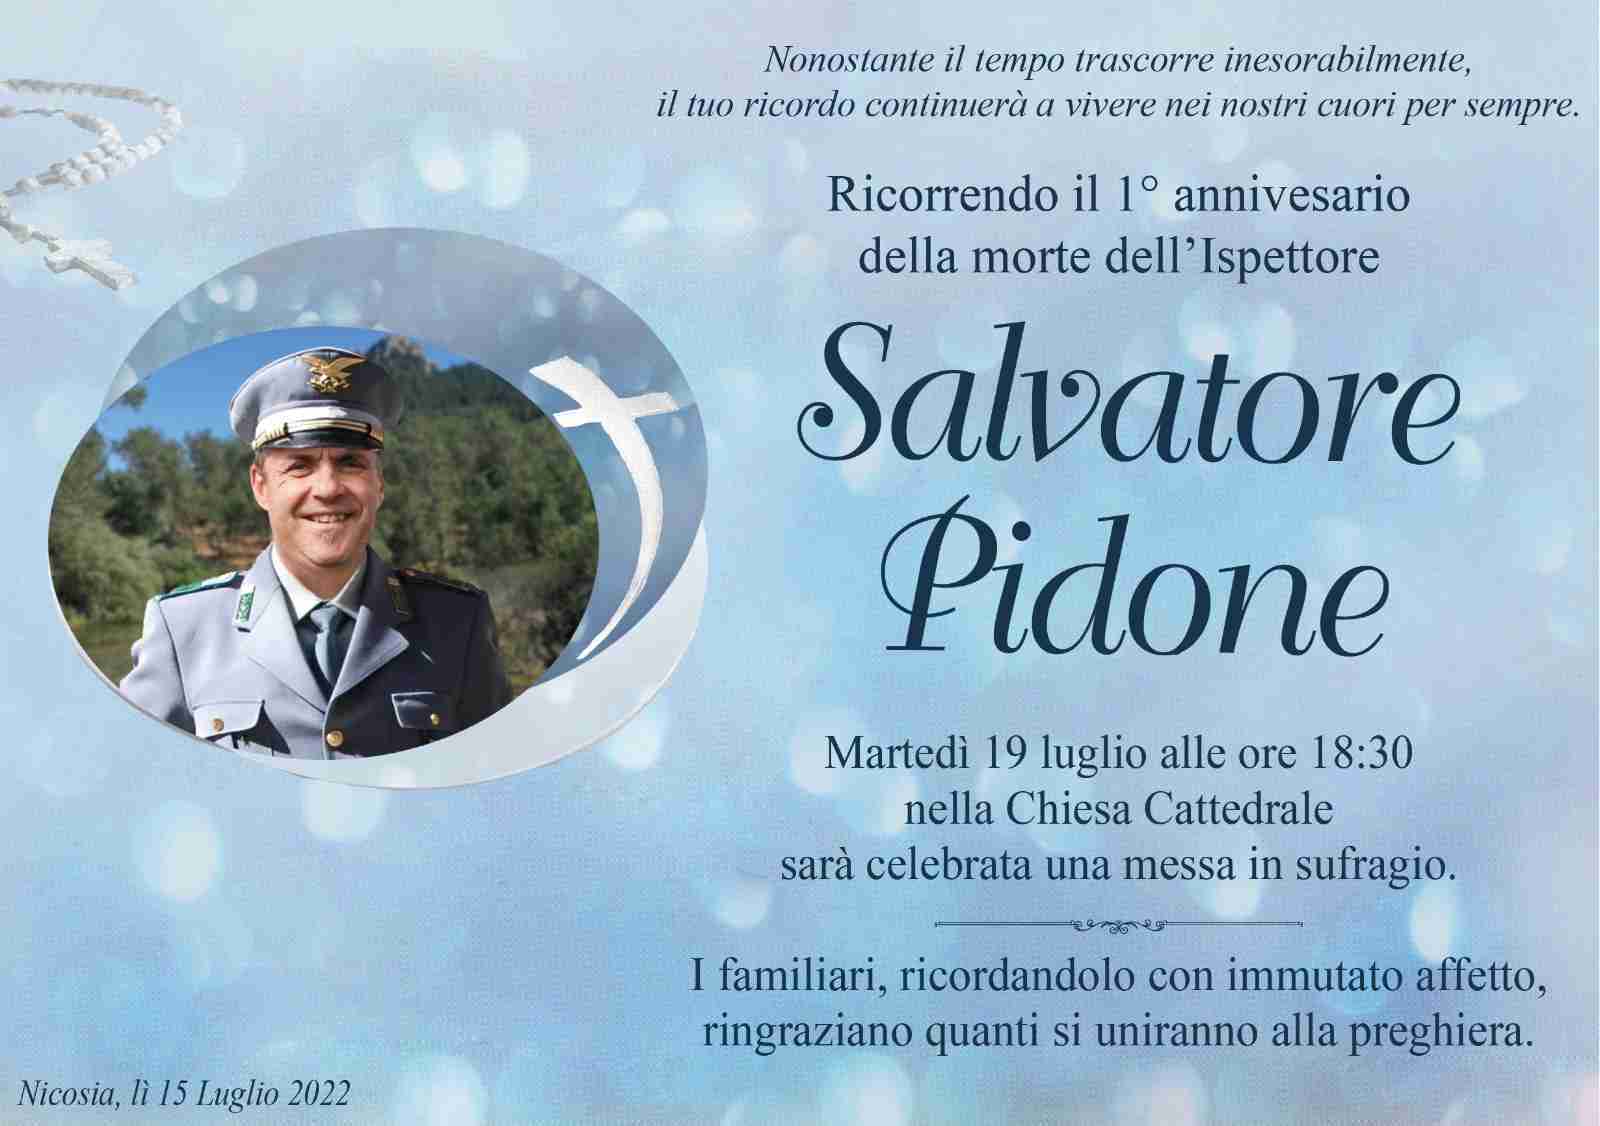 Salvatore Pidone